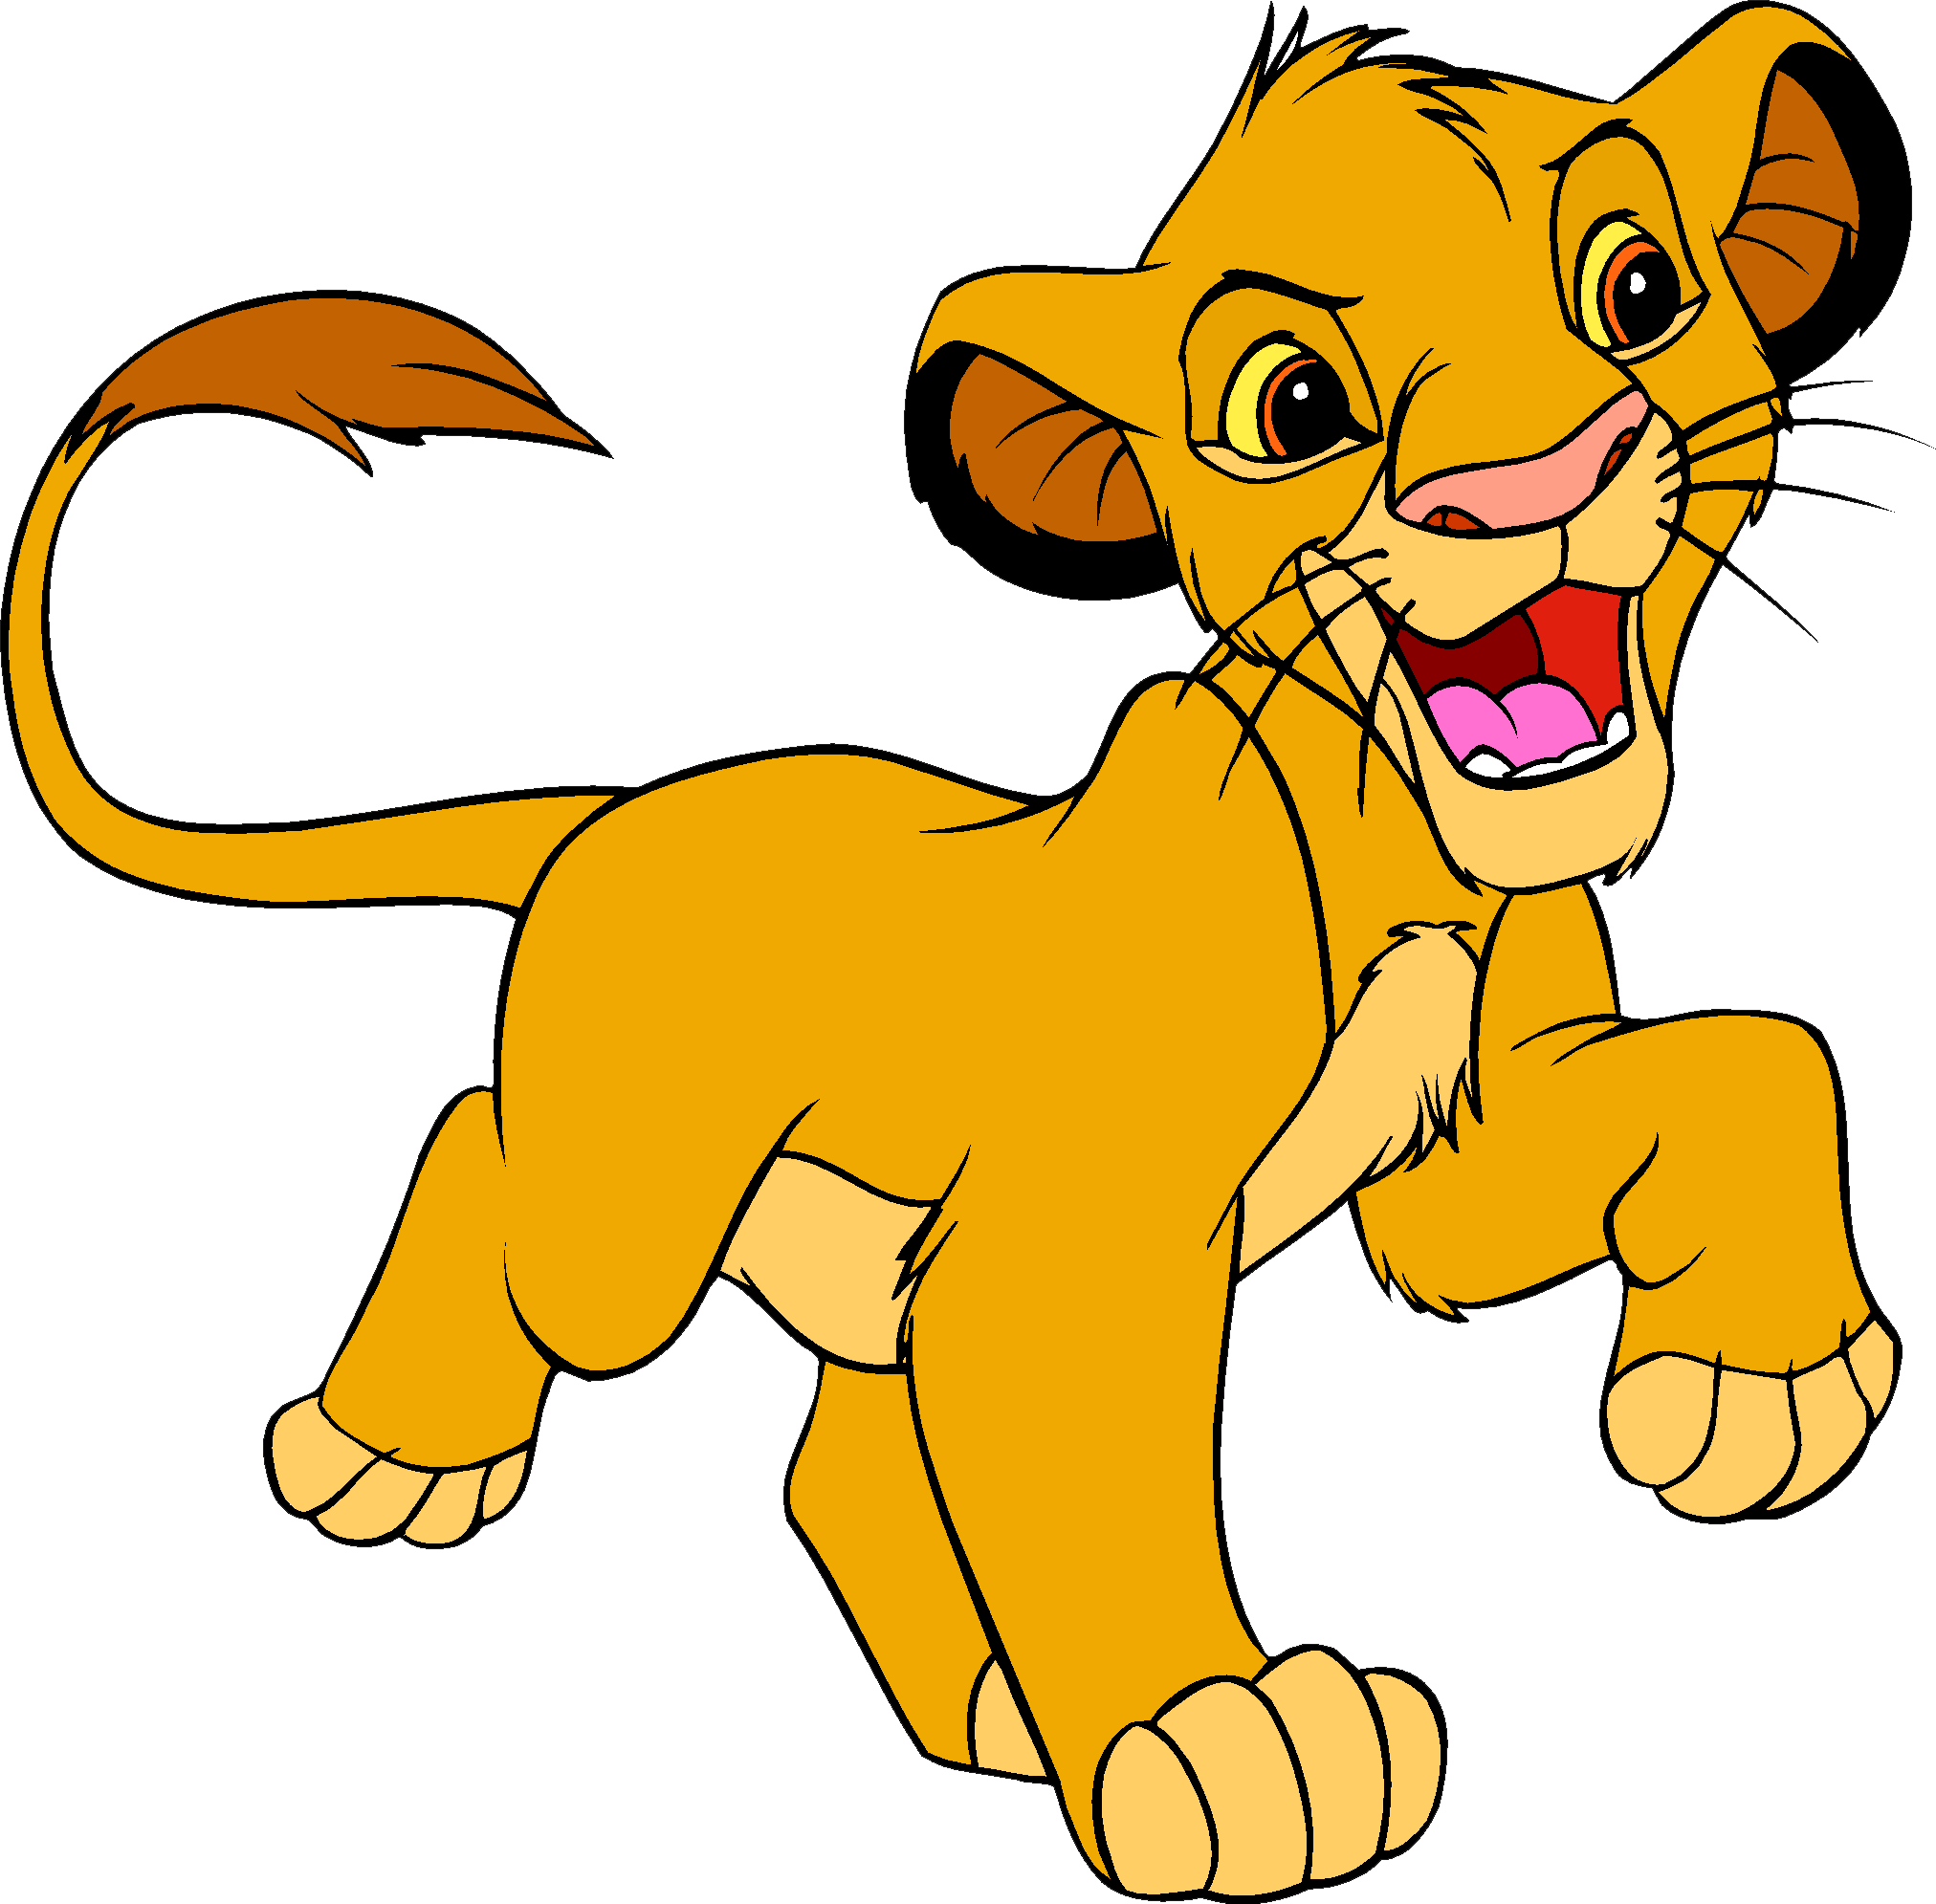 The Lion King Logo - Lion King PNG image free download